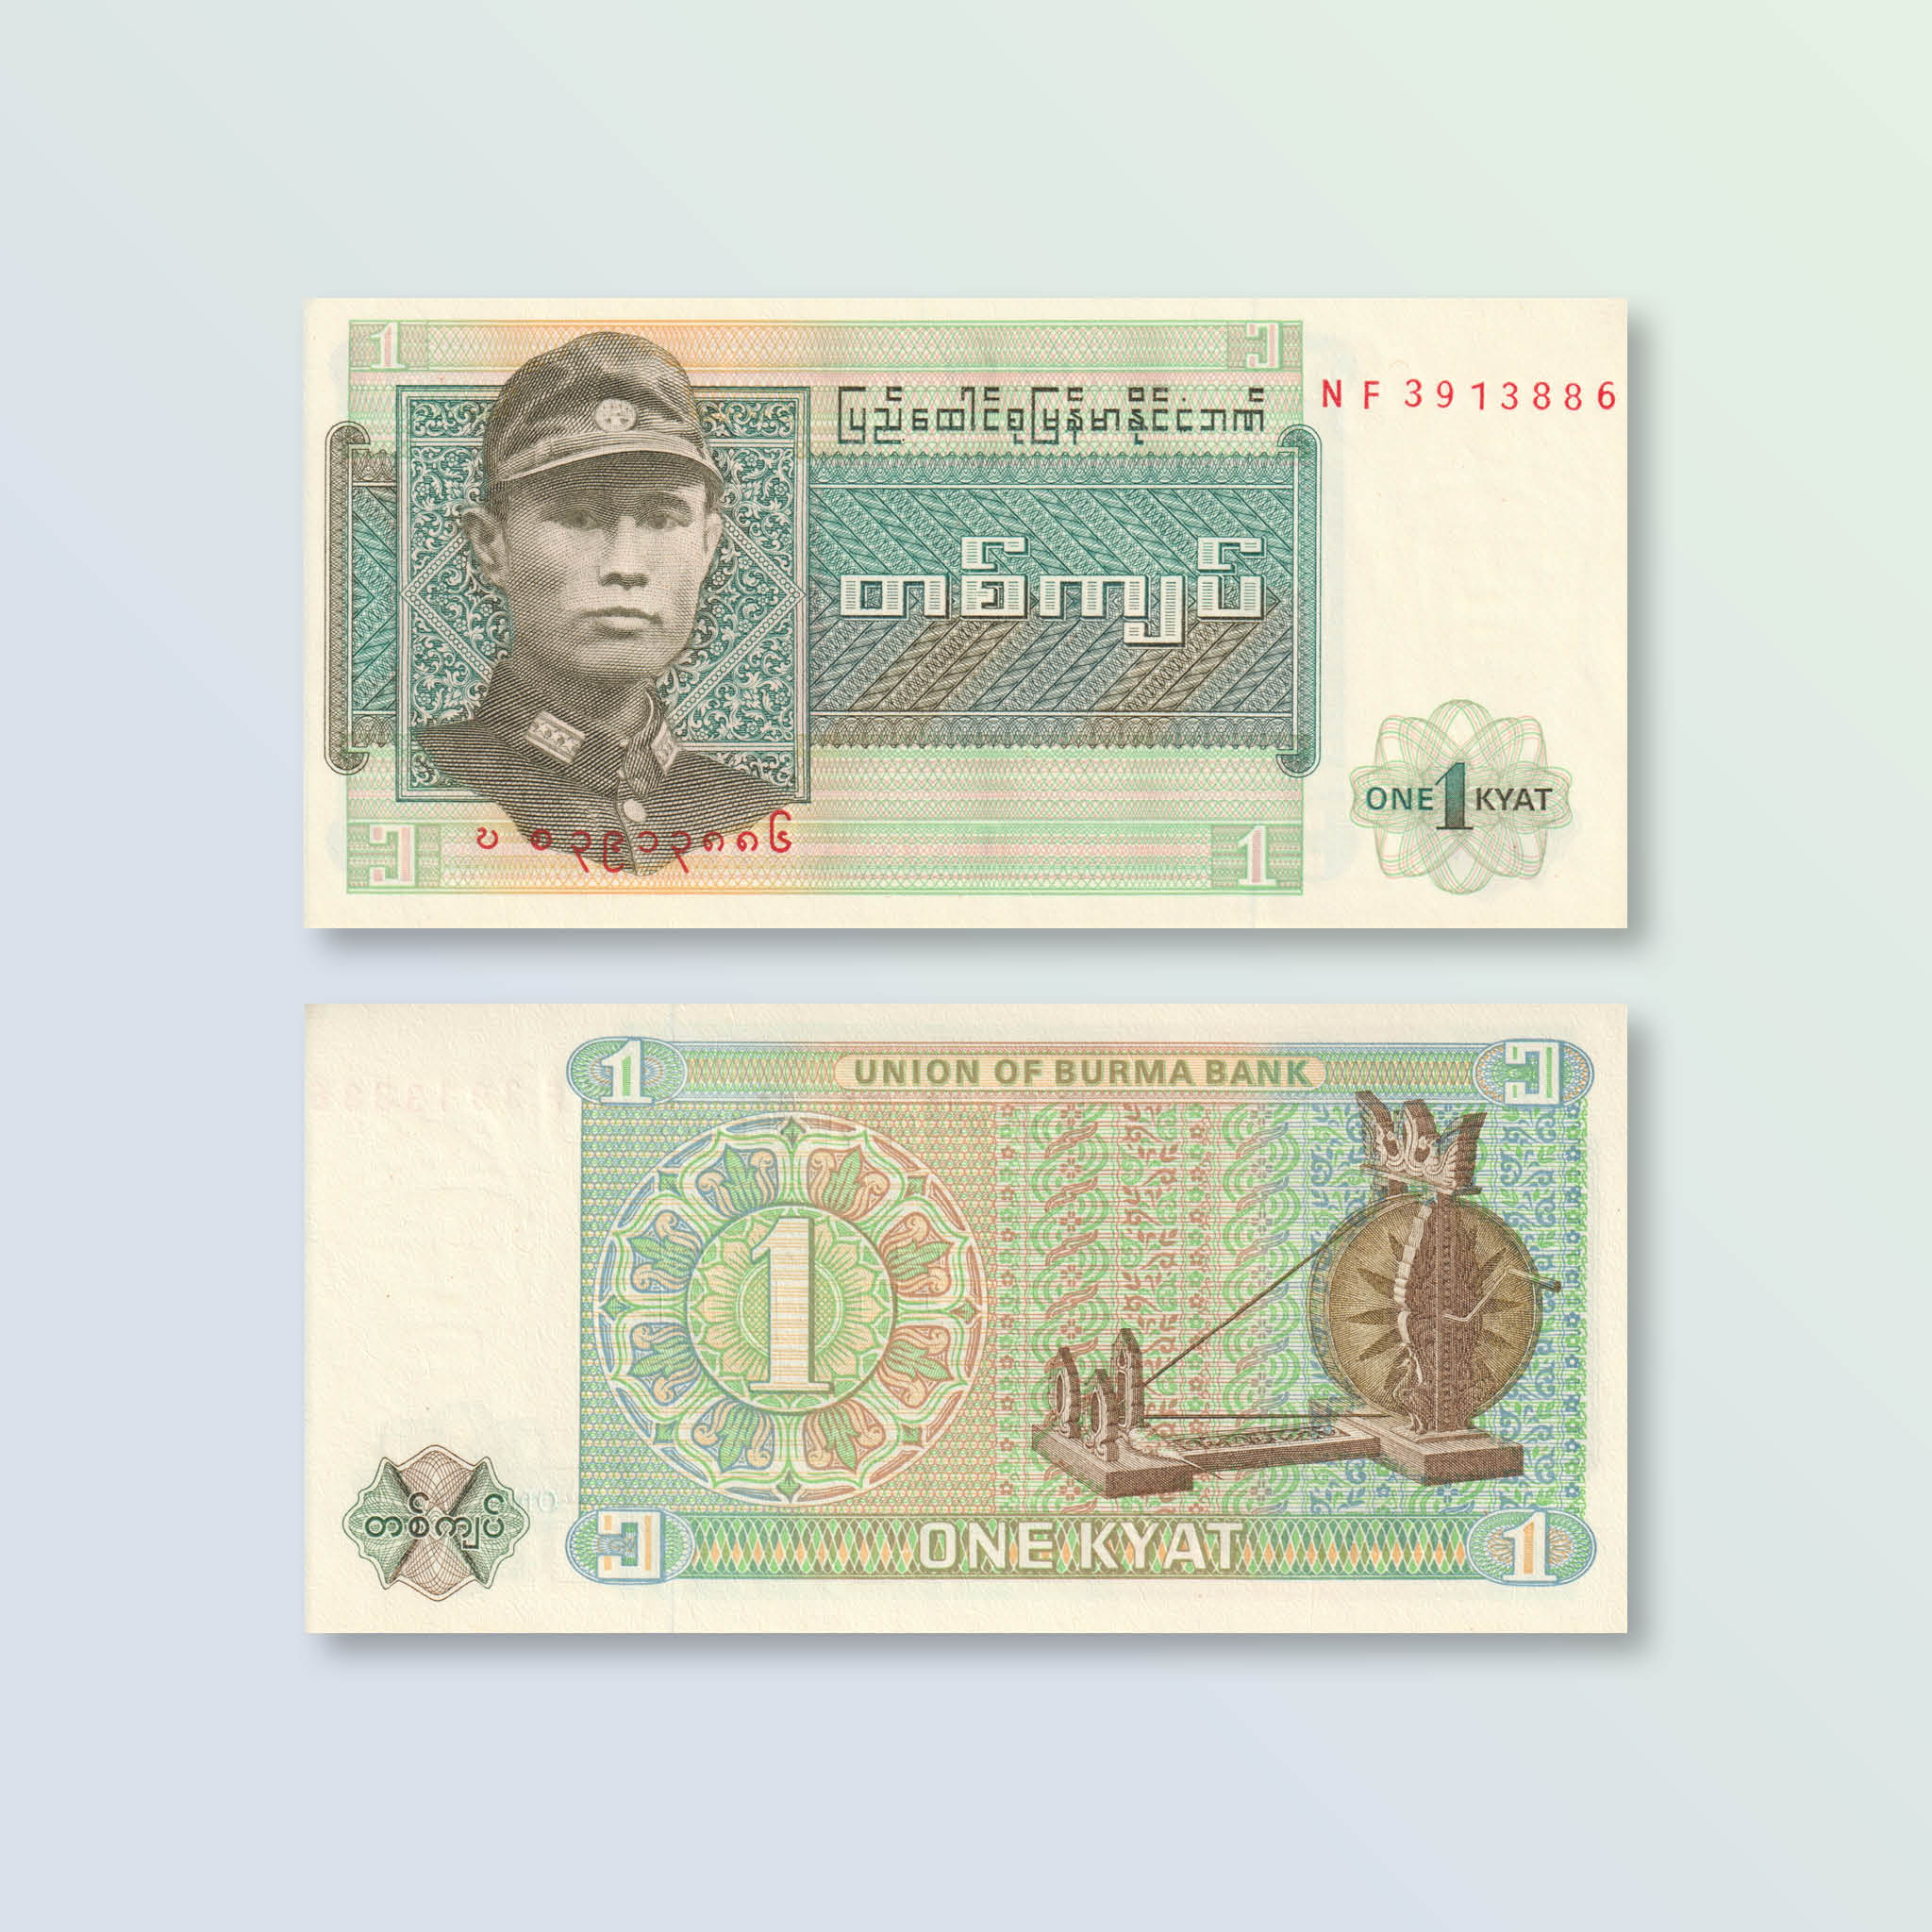 Burma 1 Kyat, 1972, B1001a, P56, UNC - Robert's World Money - World Banknotes